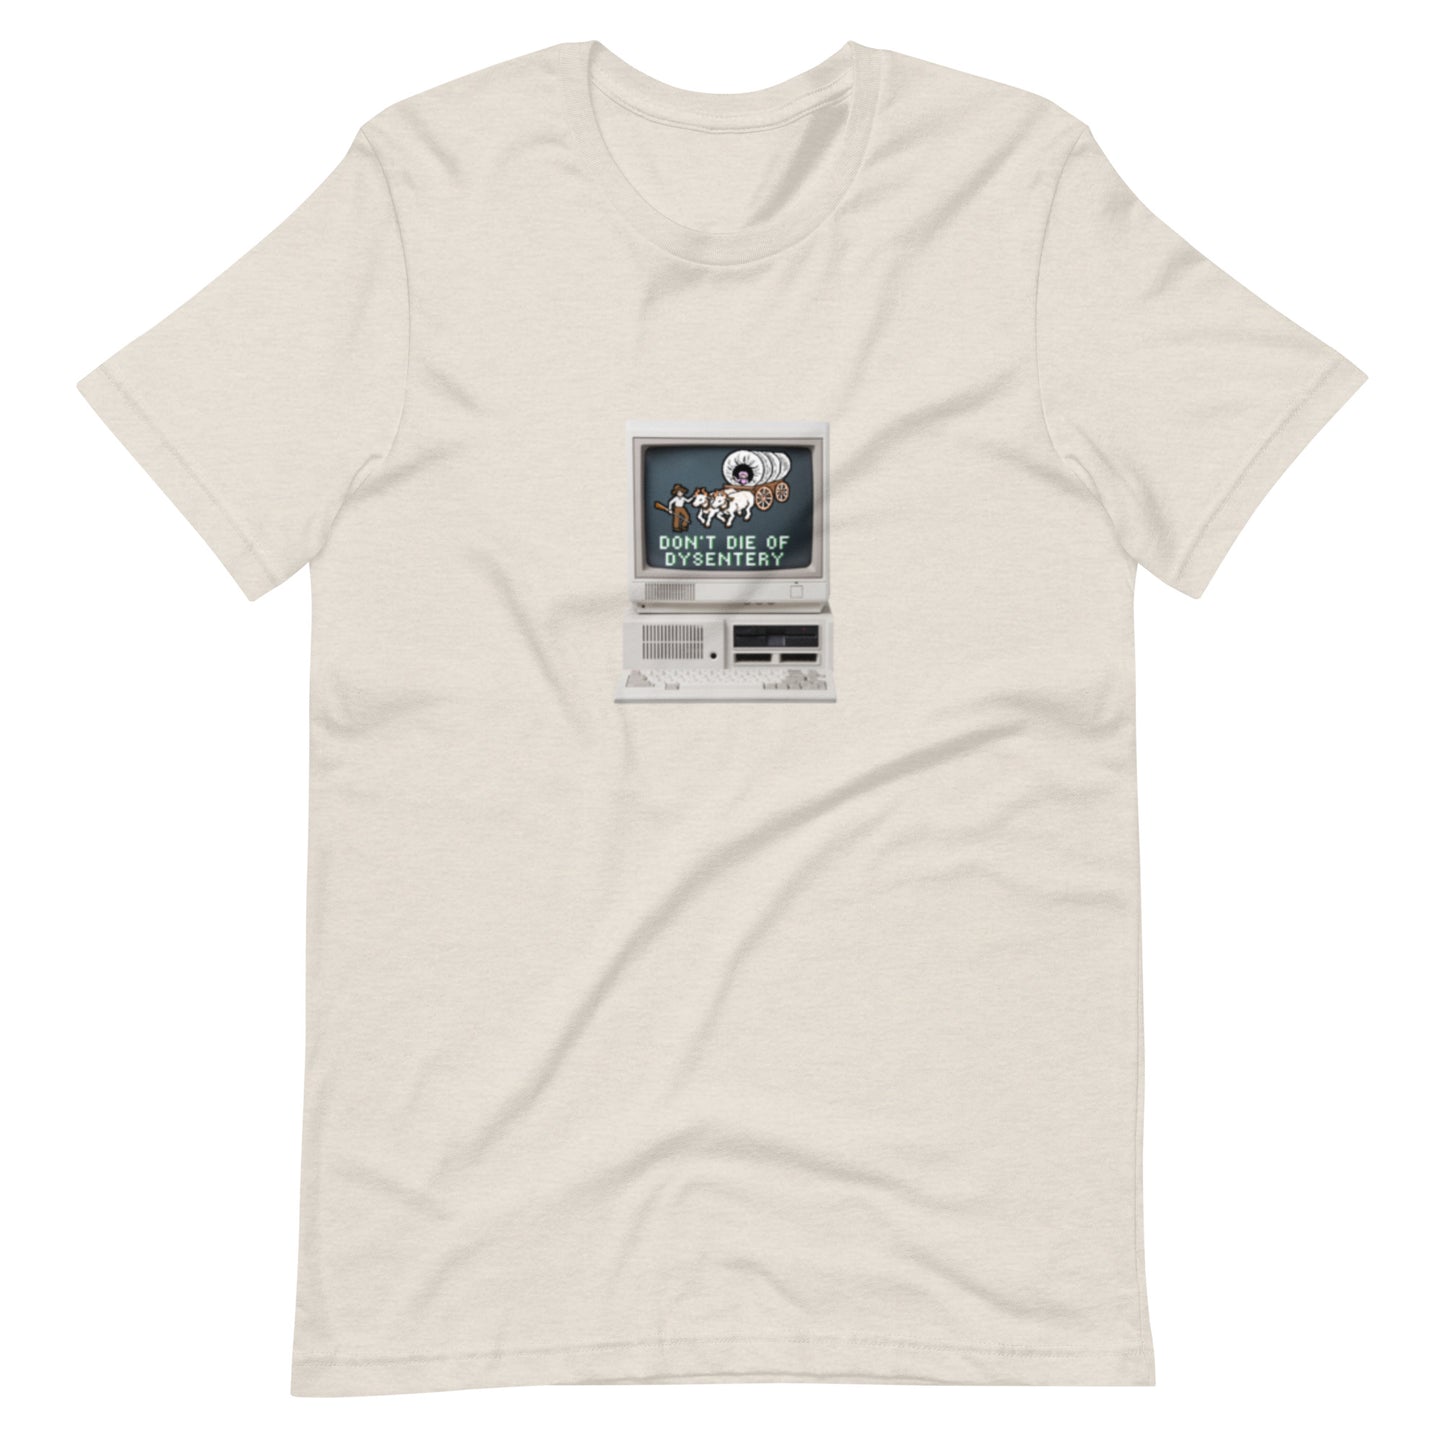 Oregon Trail Retro Vibes t-shirt